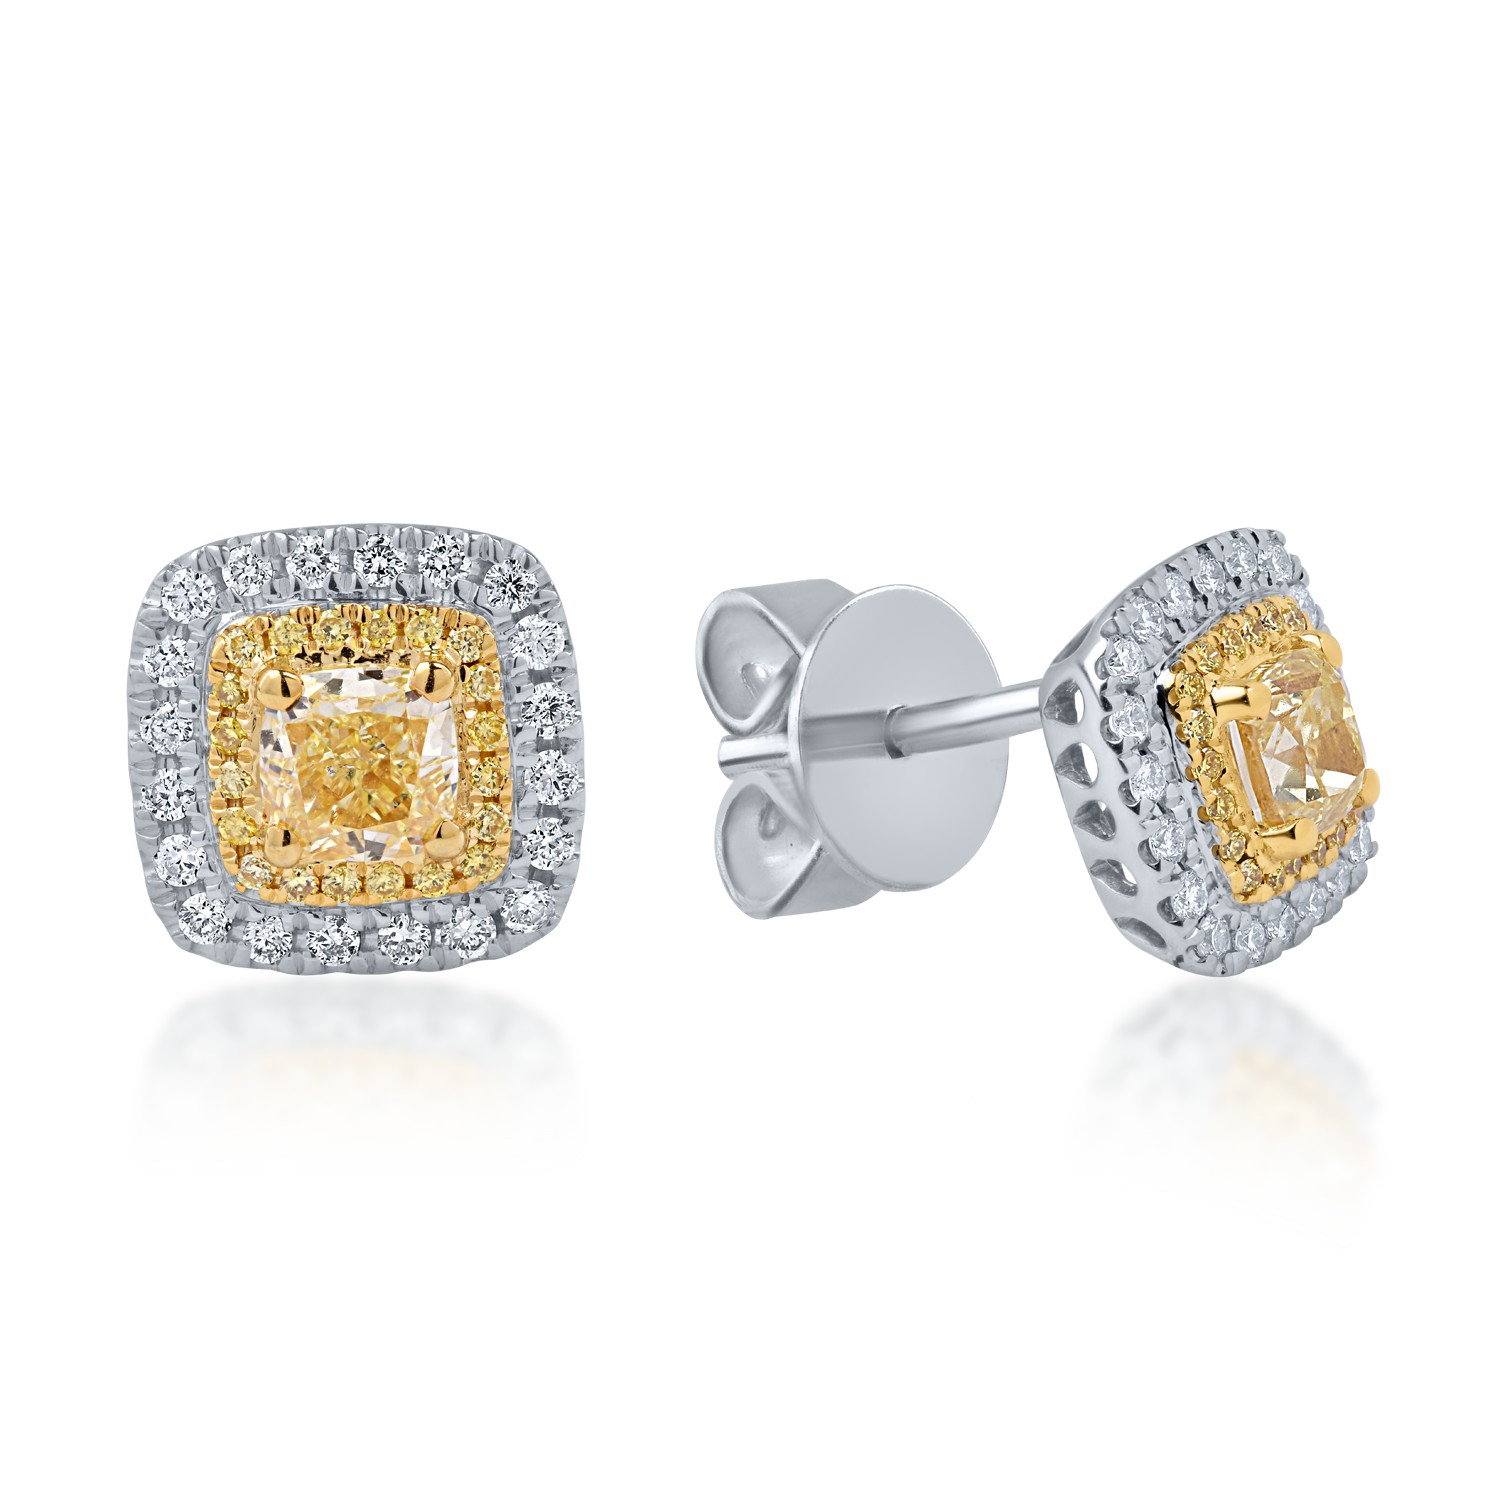 Cercei din aur alb-galben cu diamante galbene de 1.13ct si diamante transparente de 0.26ct